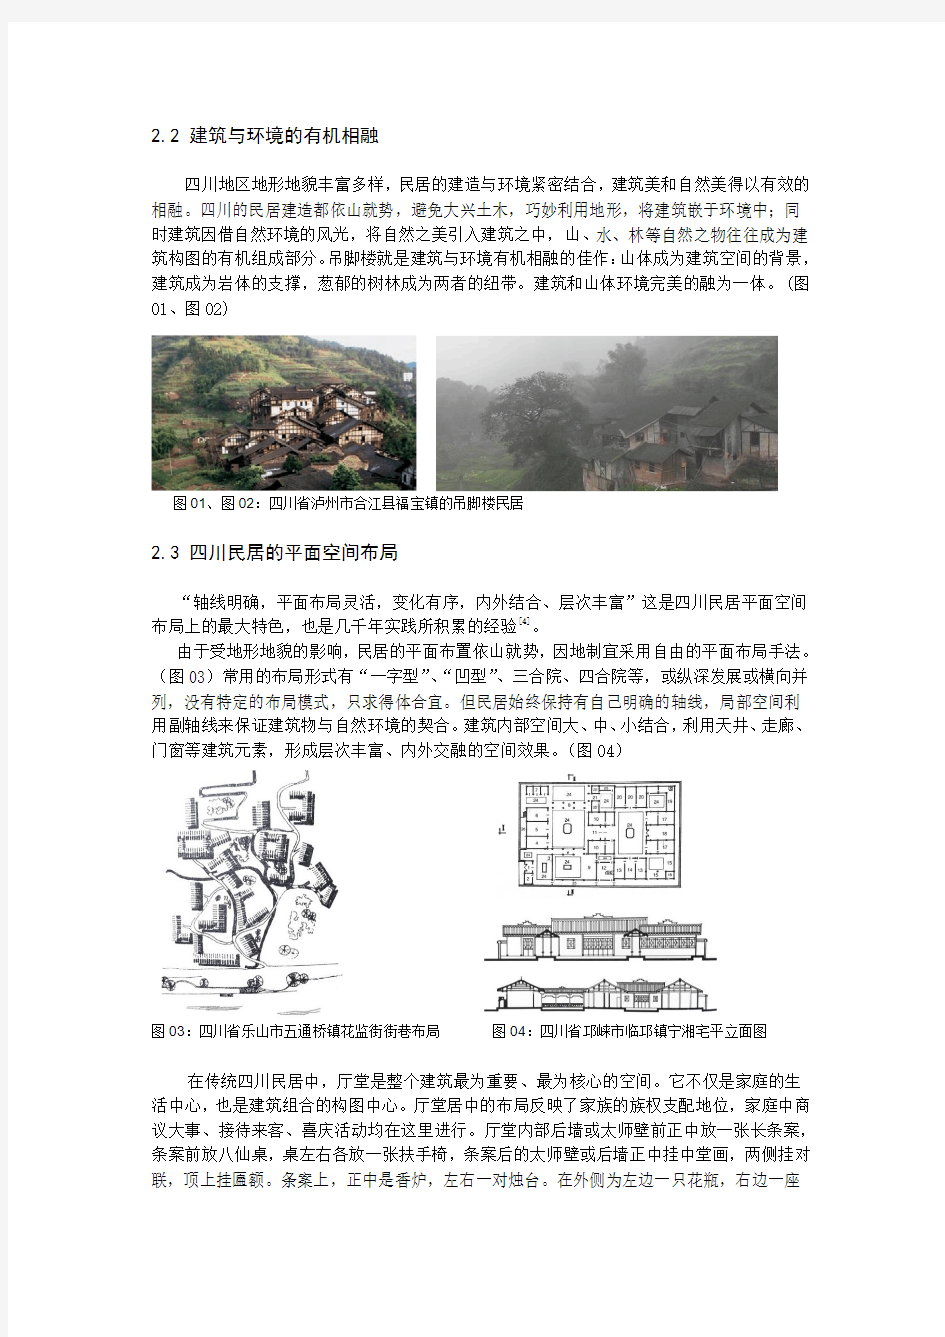 地域性民居元素的研究与实践——以四川省西充县双龙桥新农村综合体建筑设计为例